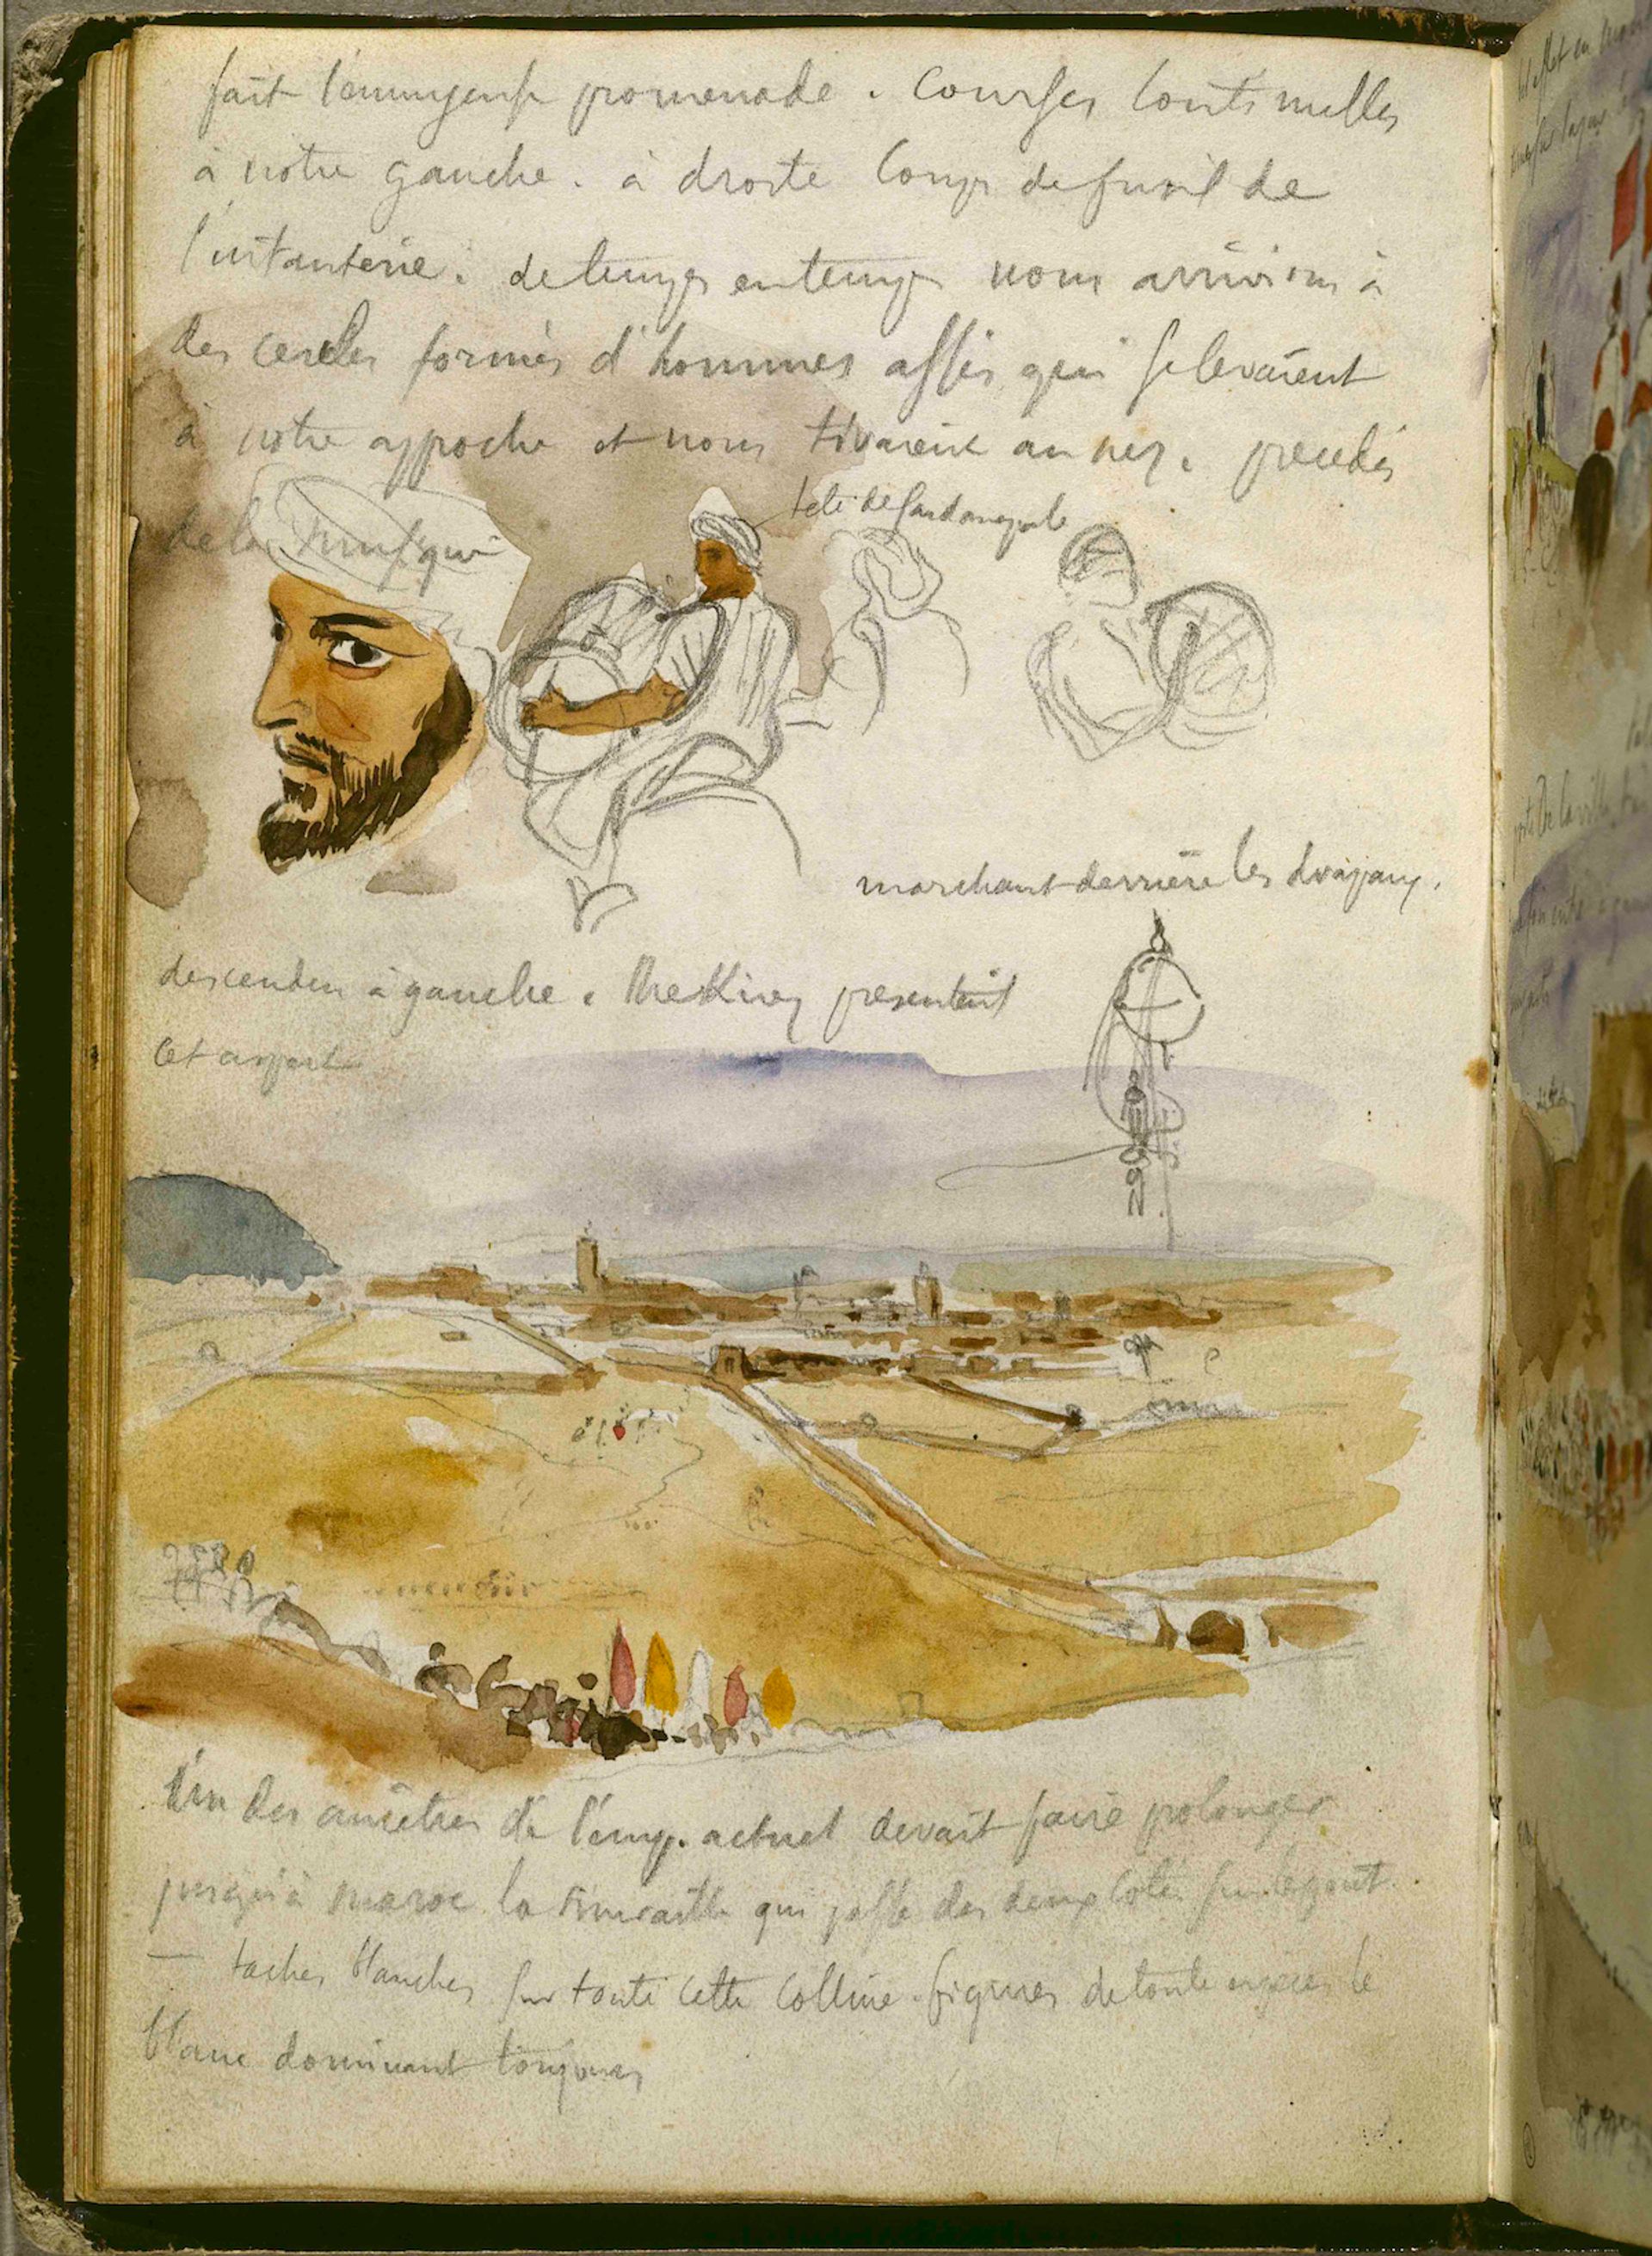 Eugène Delacroix, a page from his notebook for 15 March 1832 © RMN-Grand Palais (Musée du Louvre) / Gérard Blot